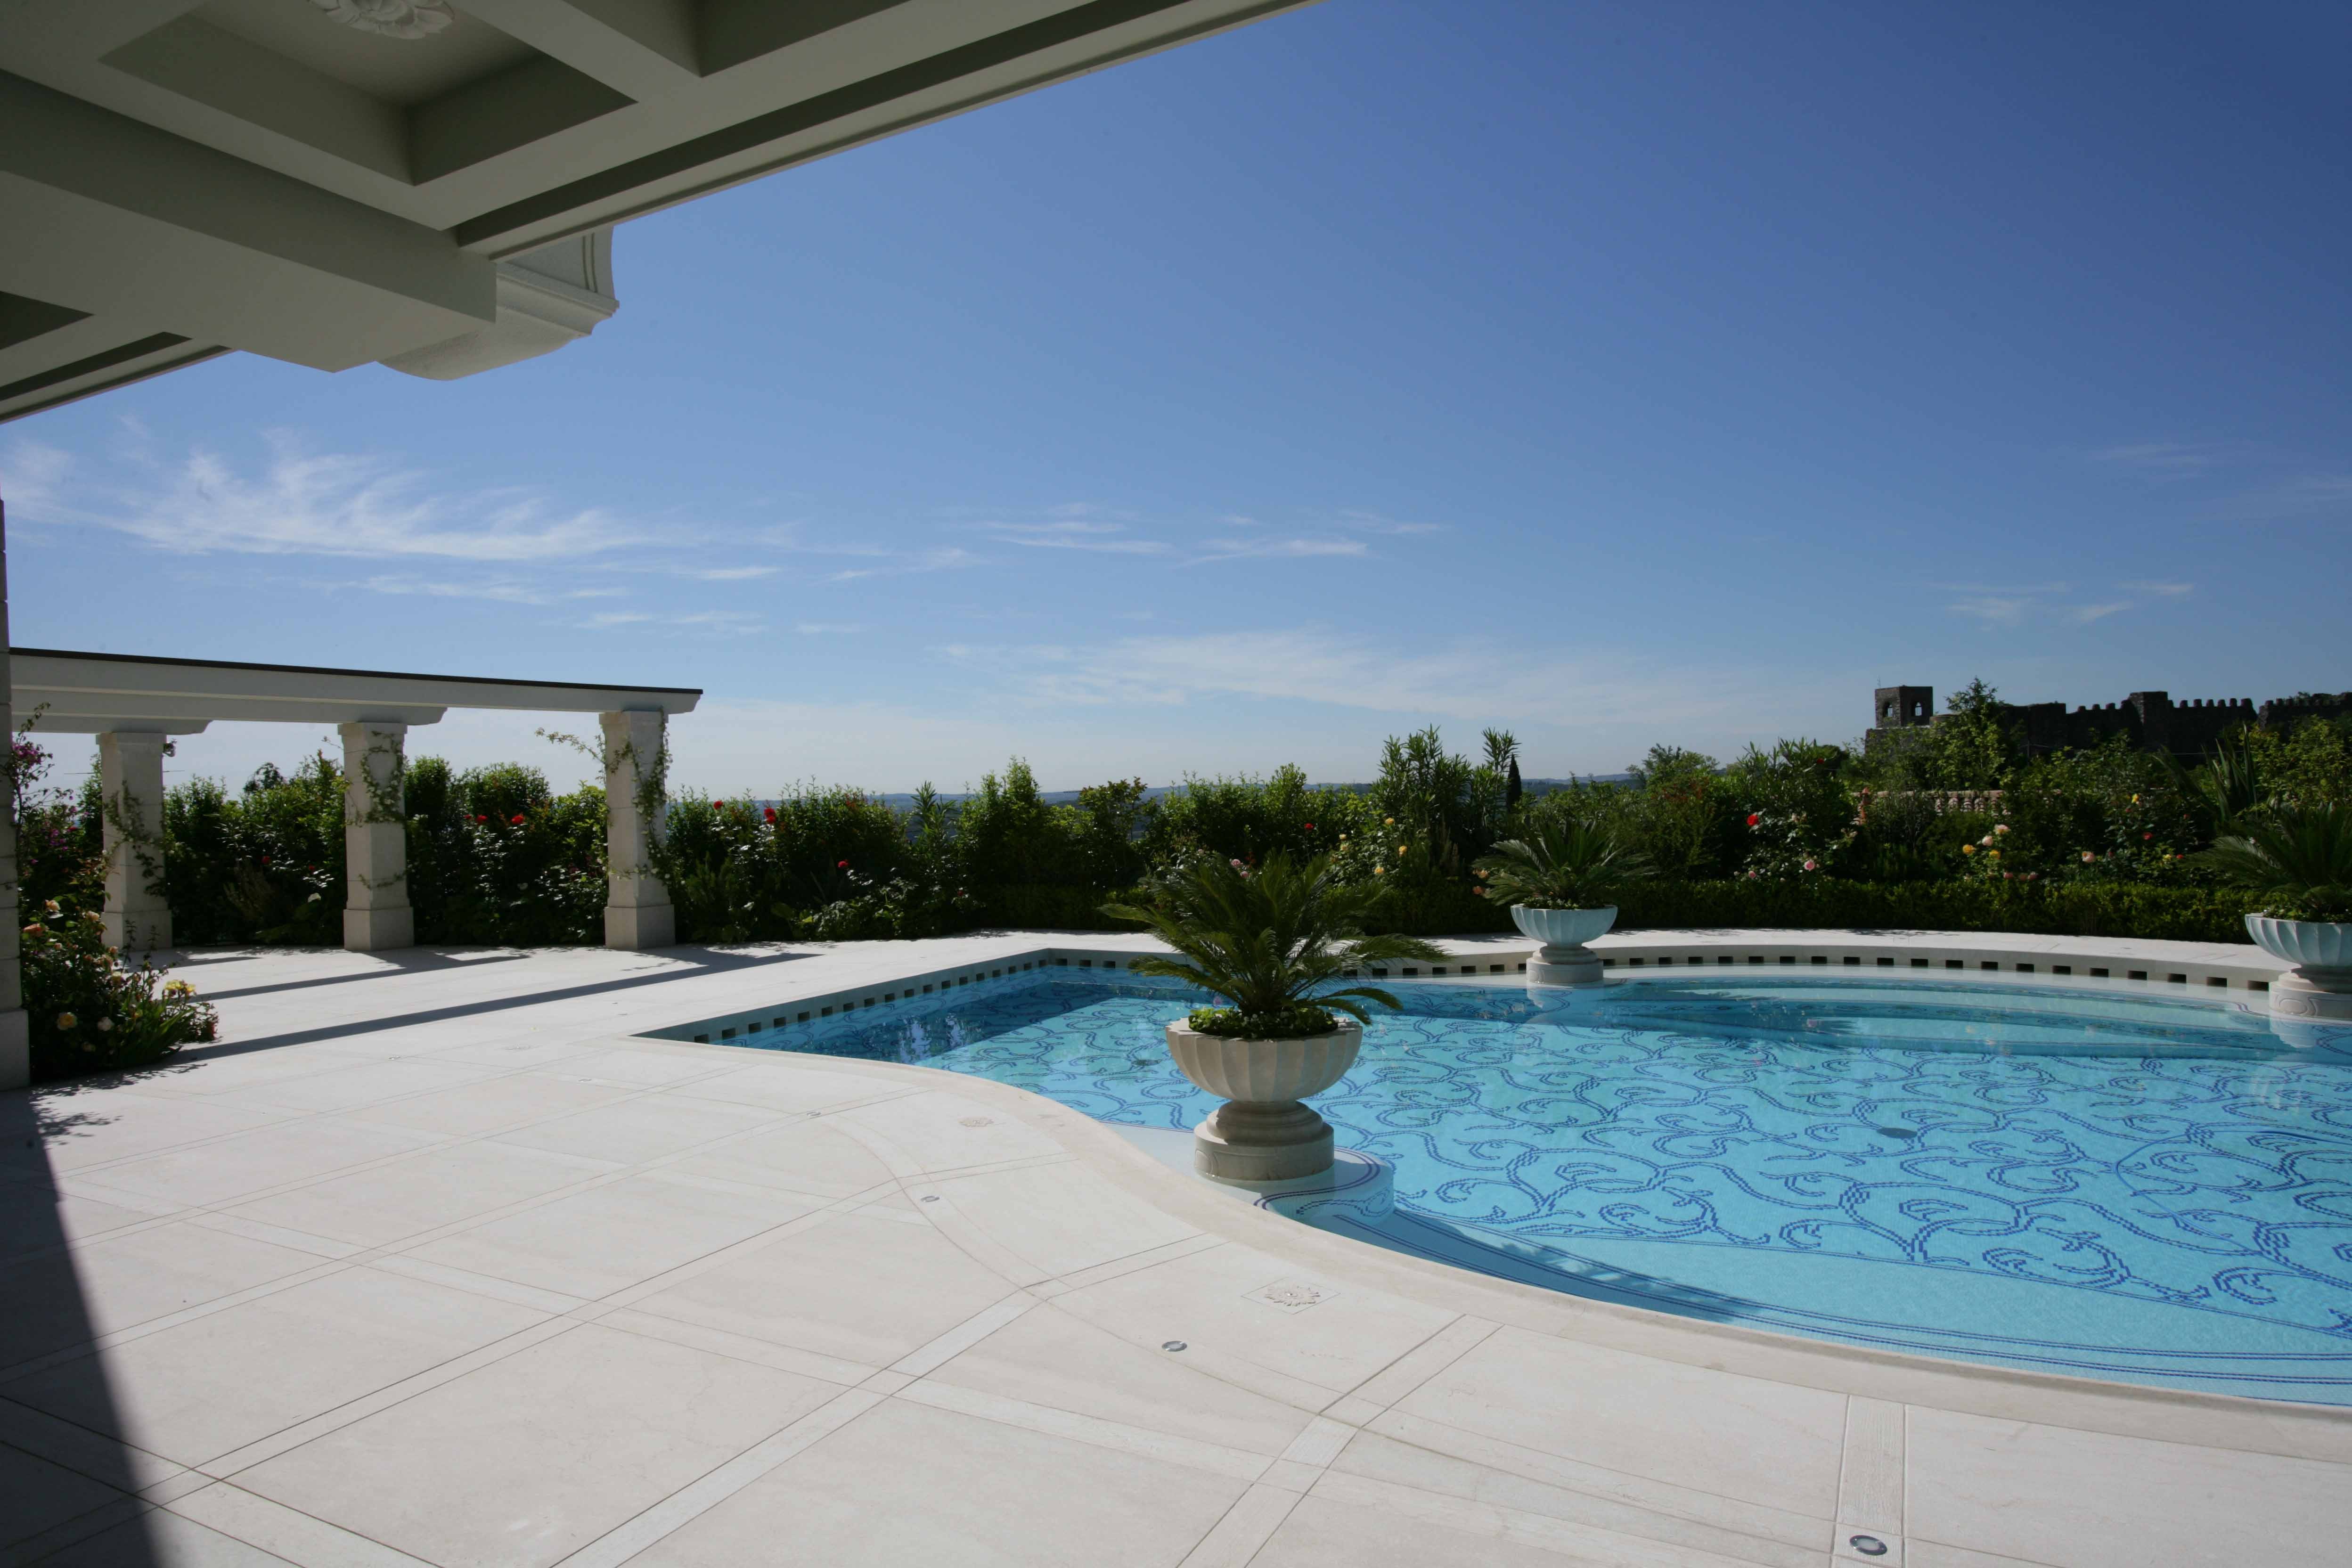 Harmonic and elegante lines draw this classic pool - استخر های شنا